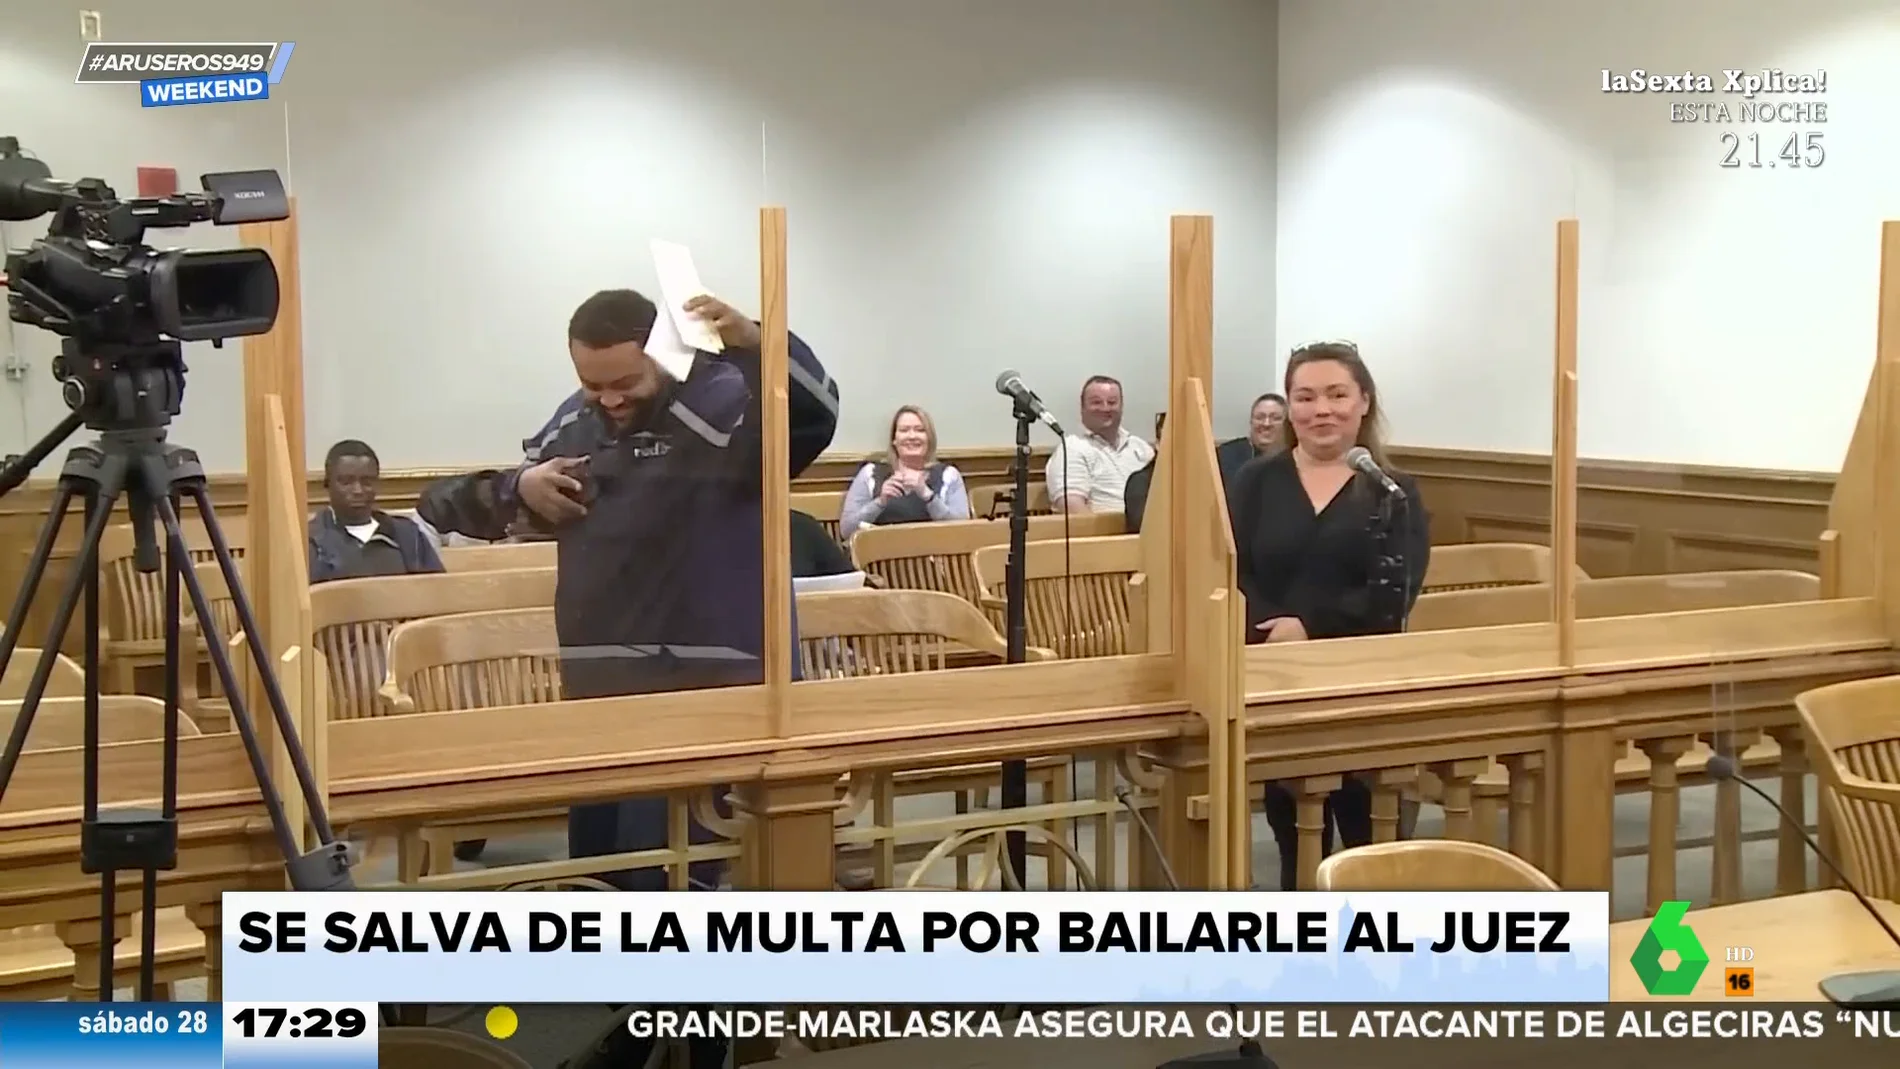 Un hombre evita una multa bailándole al juez, de manera literal